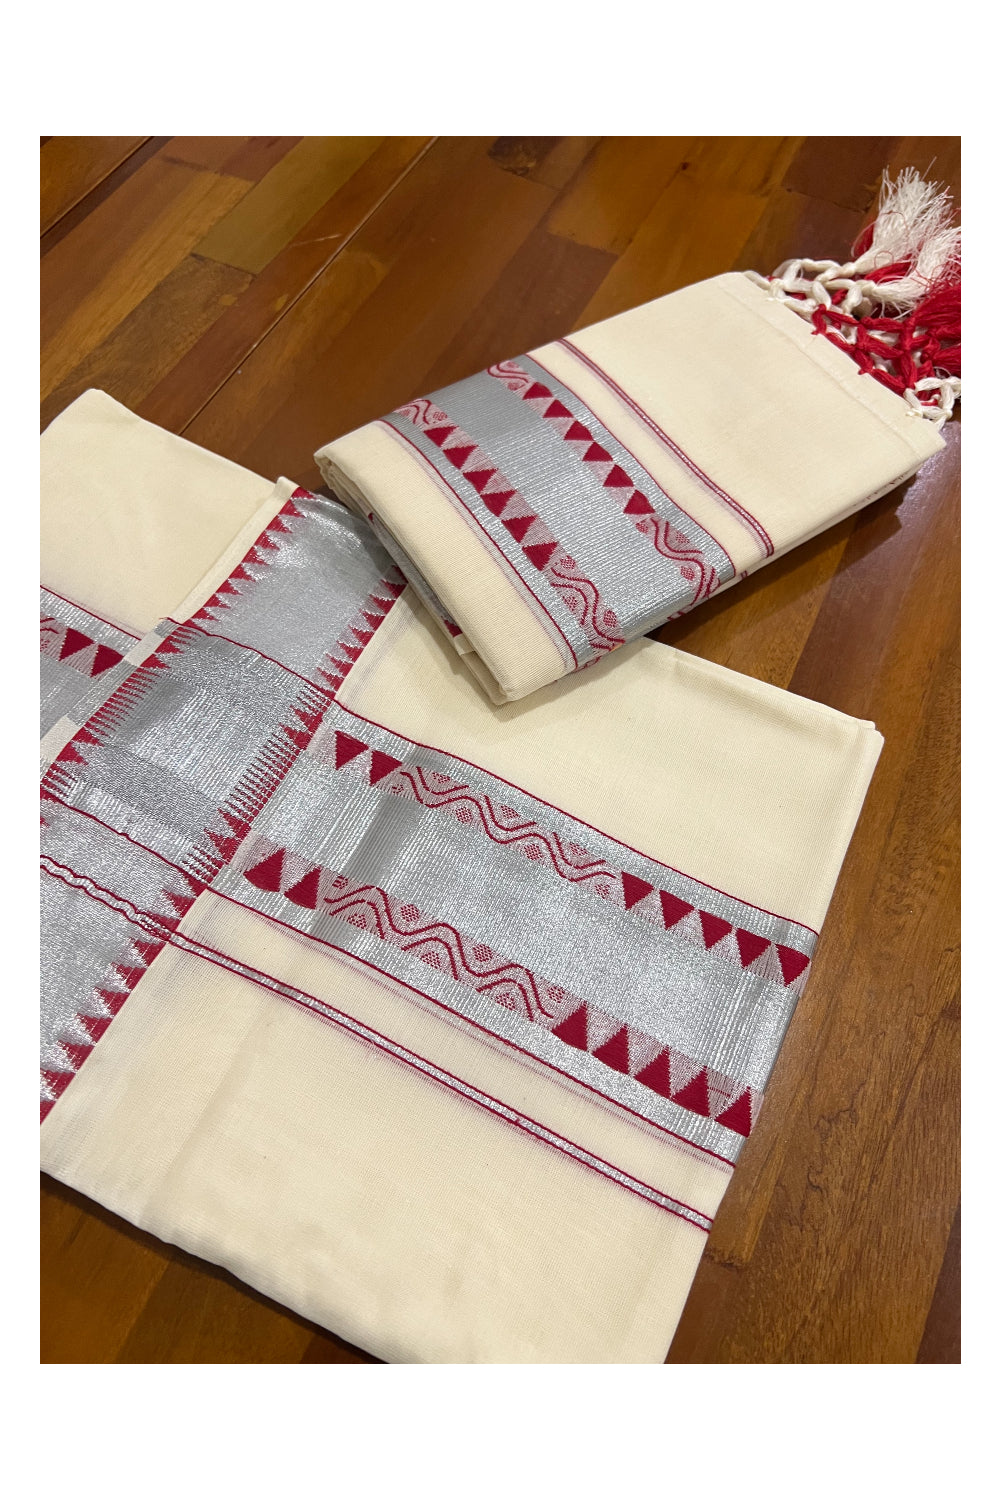 Kerala Cotton Set Mundu Single (Mundum Neriyathum) with Silver Kasavu and Red Woven Border and Tassels Work 2.80 Mtrs